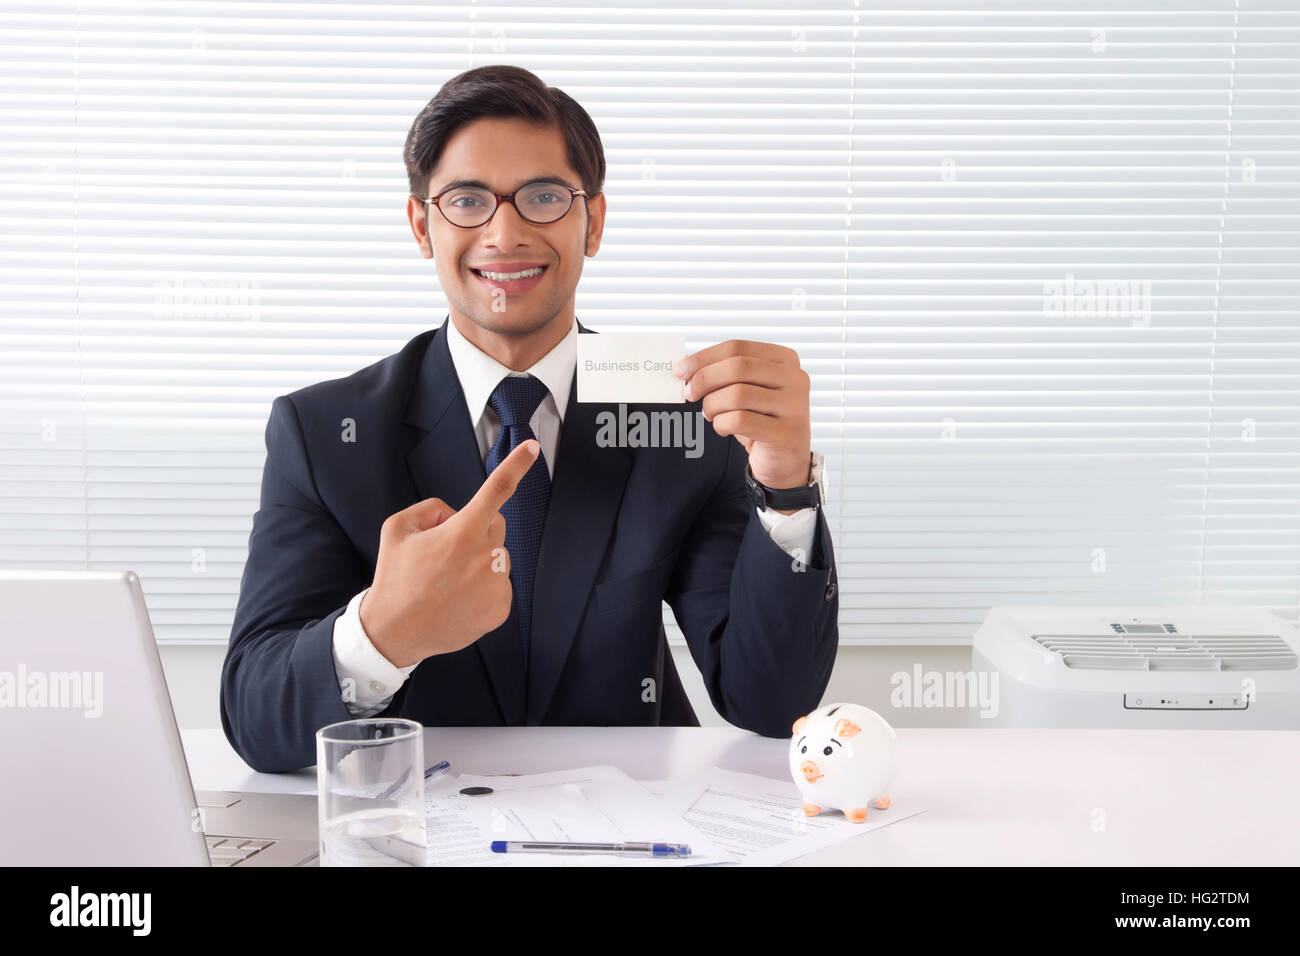 Jeune homme professionnel montrant carte d'affaires au bureau avec ordinateur portable et piggy bank on table Banque D'Images